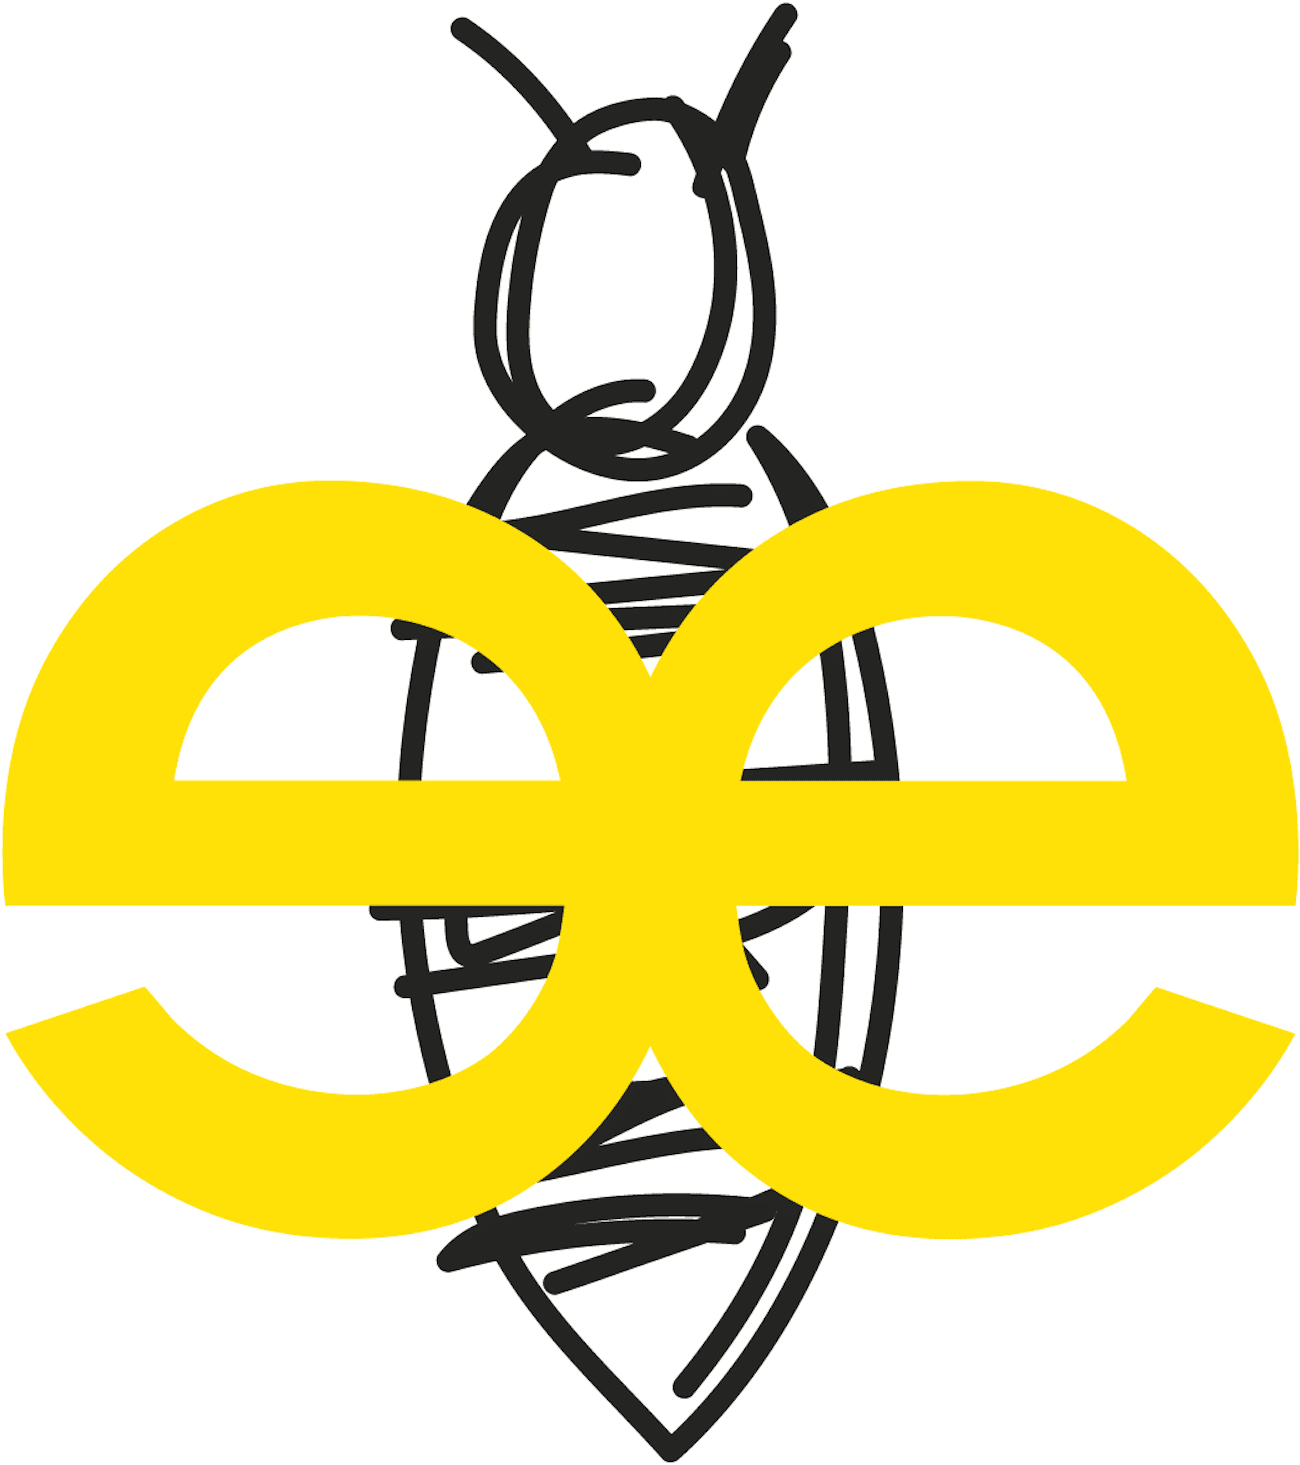 Neue Bildmarke mit Bienenkröper und Doppel-e für Beehive